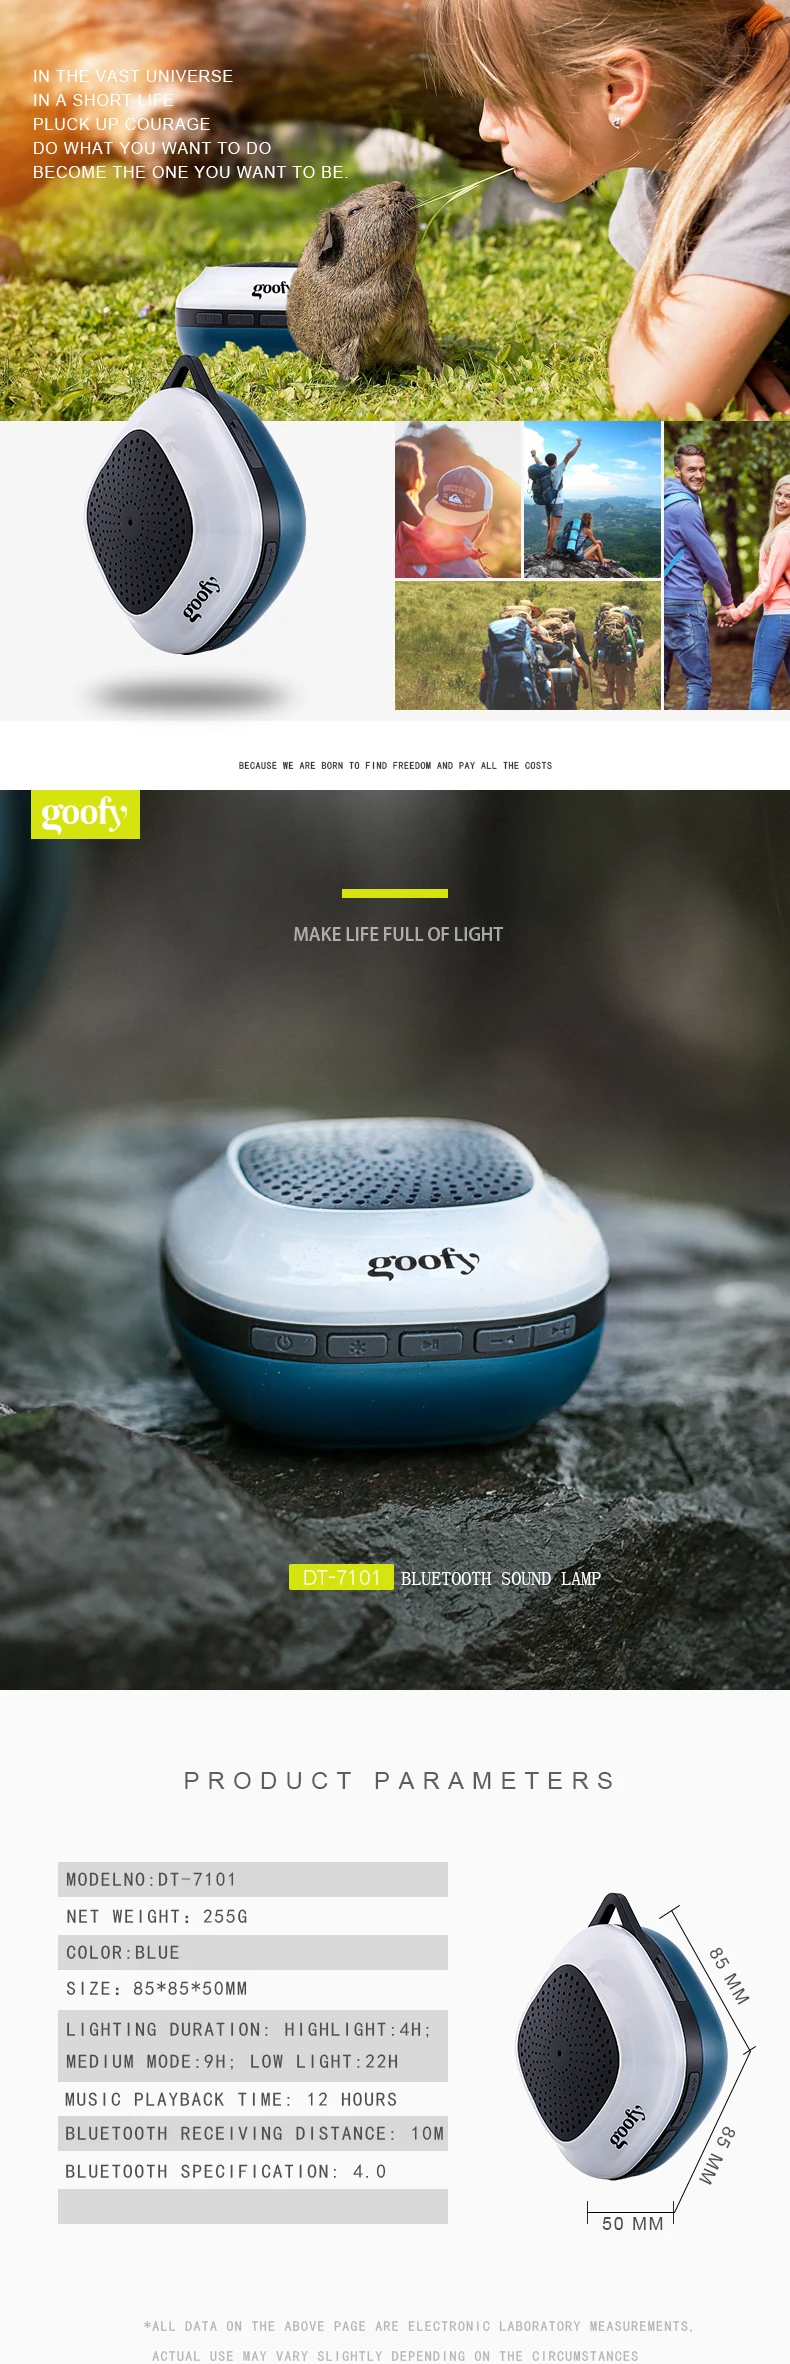 Lampe de Lecture Rechargeable 2 6 LED 2 Modes Luminosité Réglable pour Lire au Lit Enceinte Bluetooth pour Camping avec Col Silicone Flexible 360° ELEGIANT Mini USB Lampe et Haut-Parleur Bluetooth 